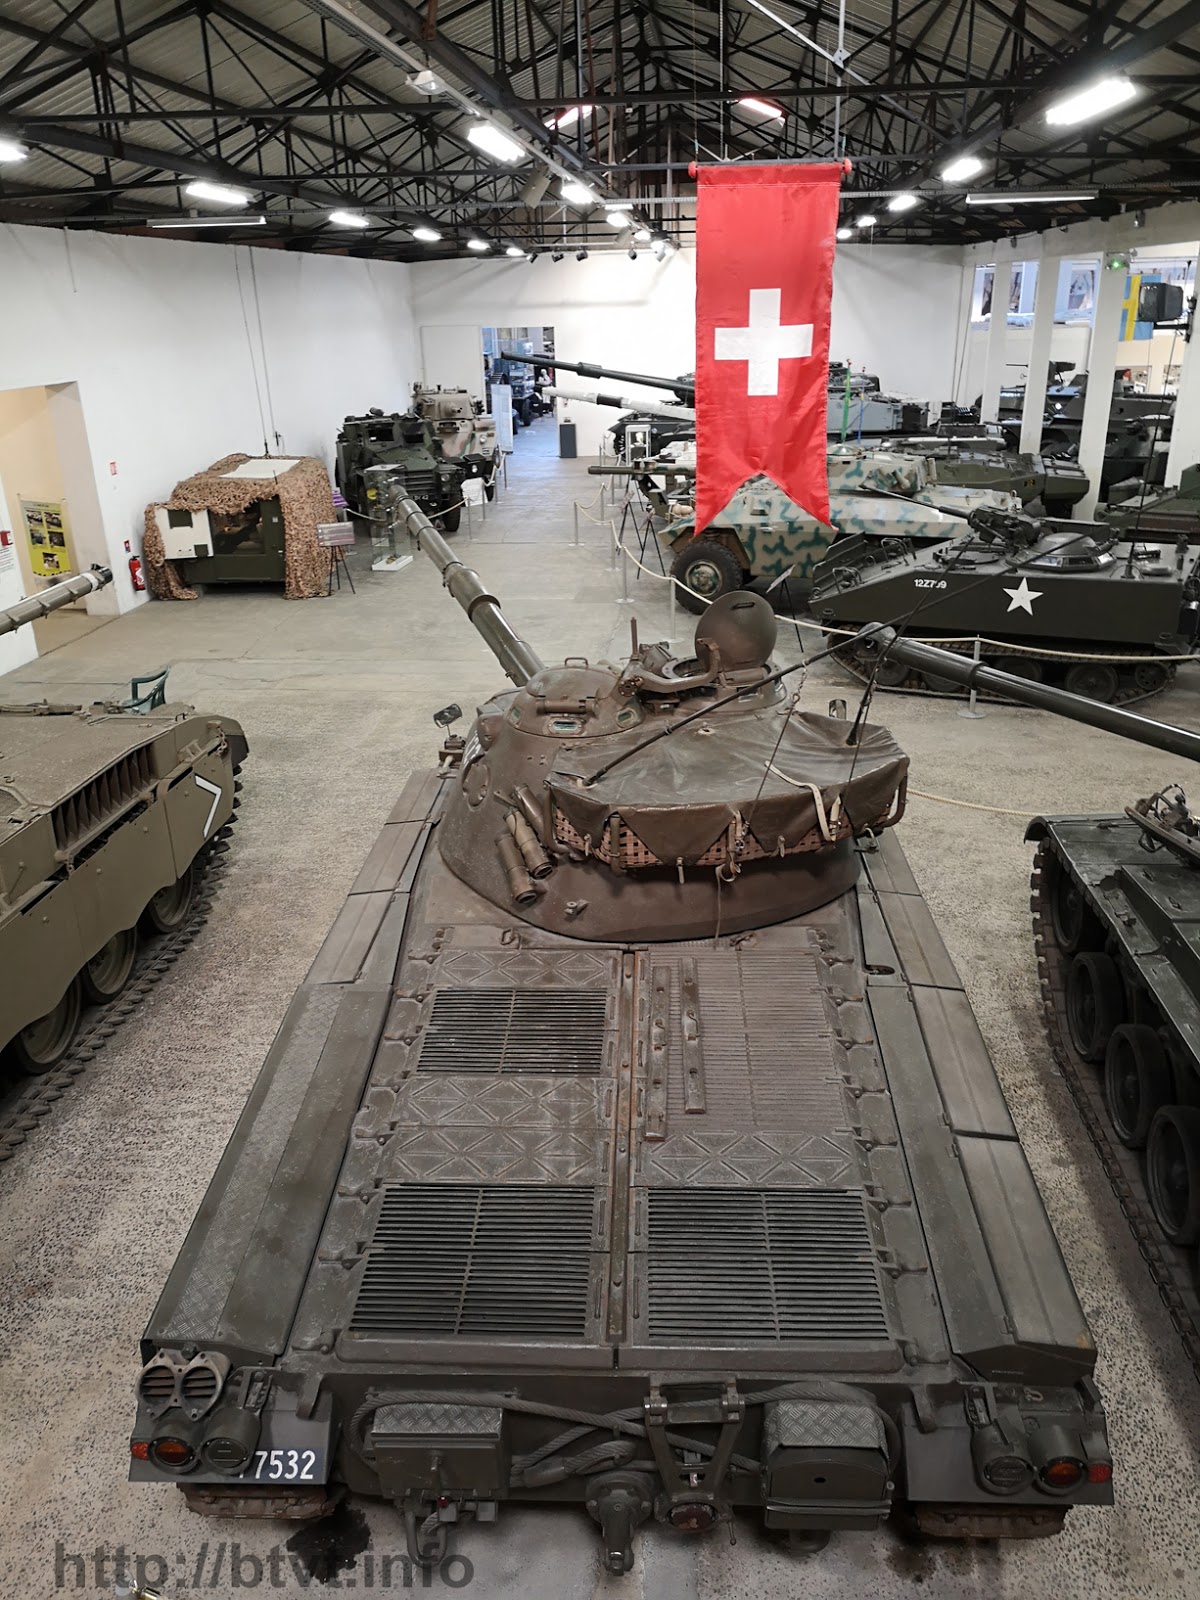 Фотообзор Panzer 61 (Pz 61) из музея в Сомюре